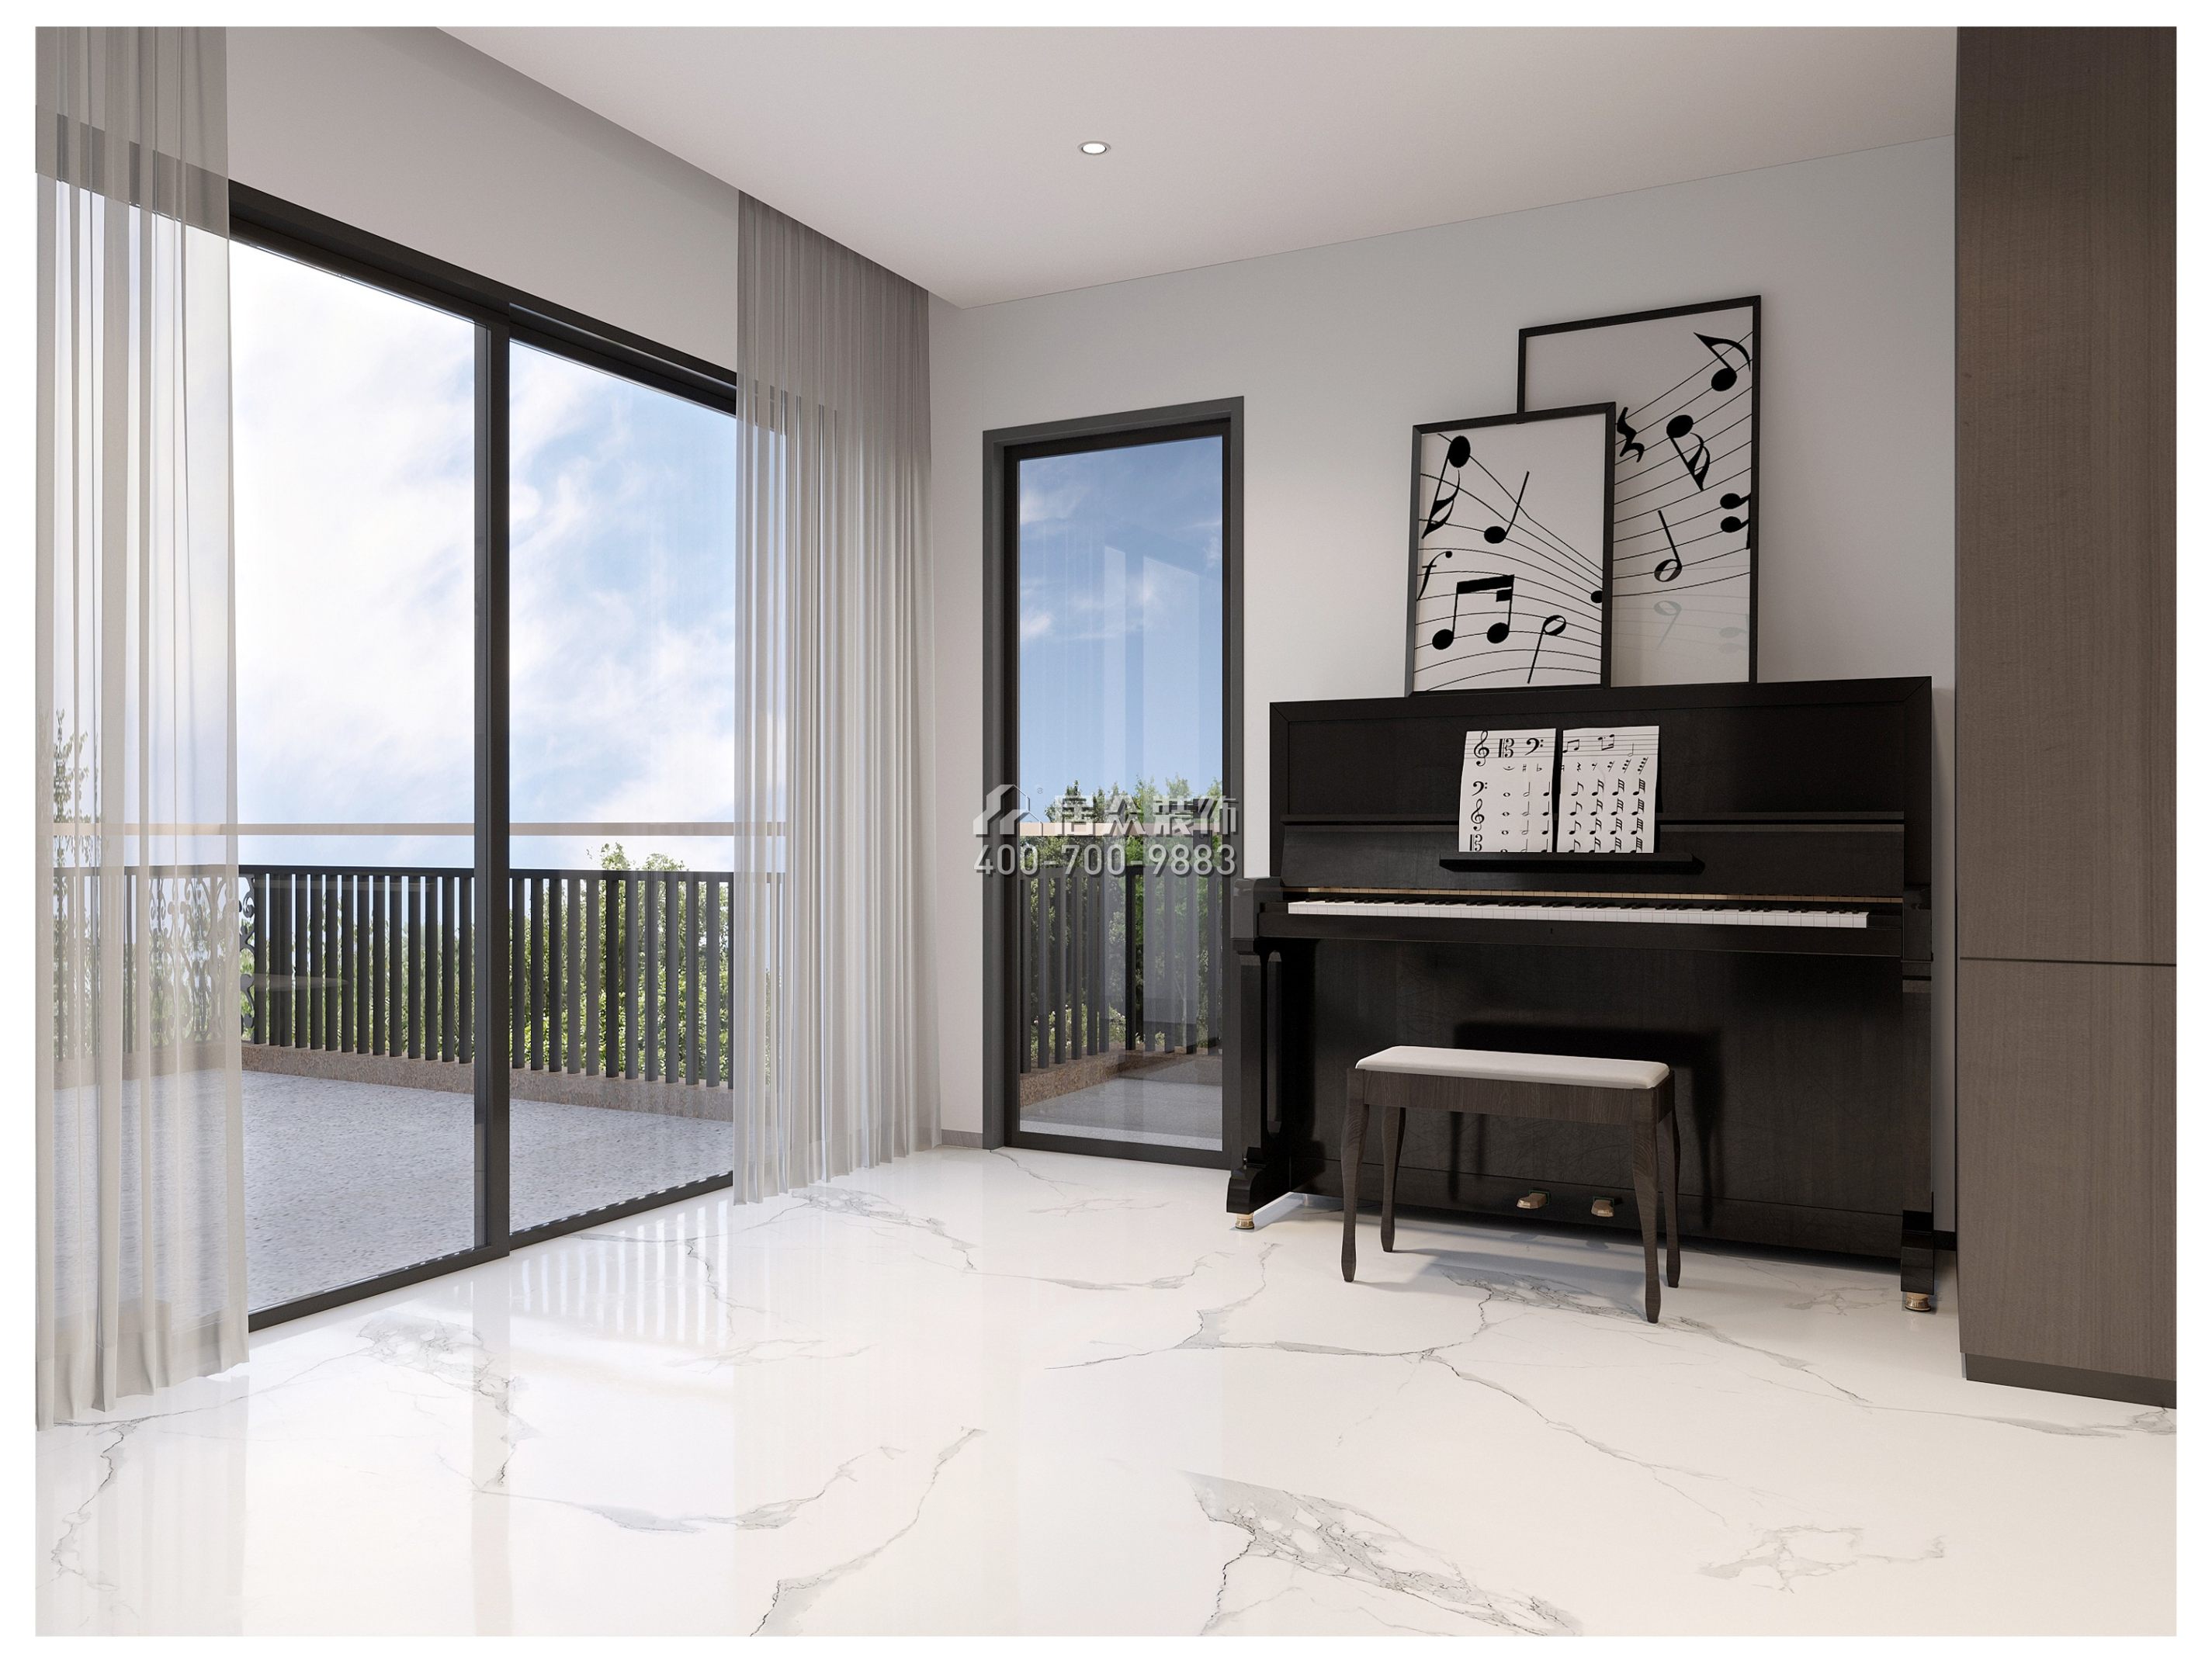 海逸豪庭御峰560平方米現代簡約風格別墅戶型娛樂室裝修效果圖